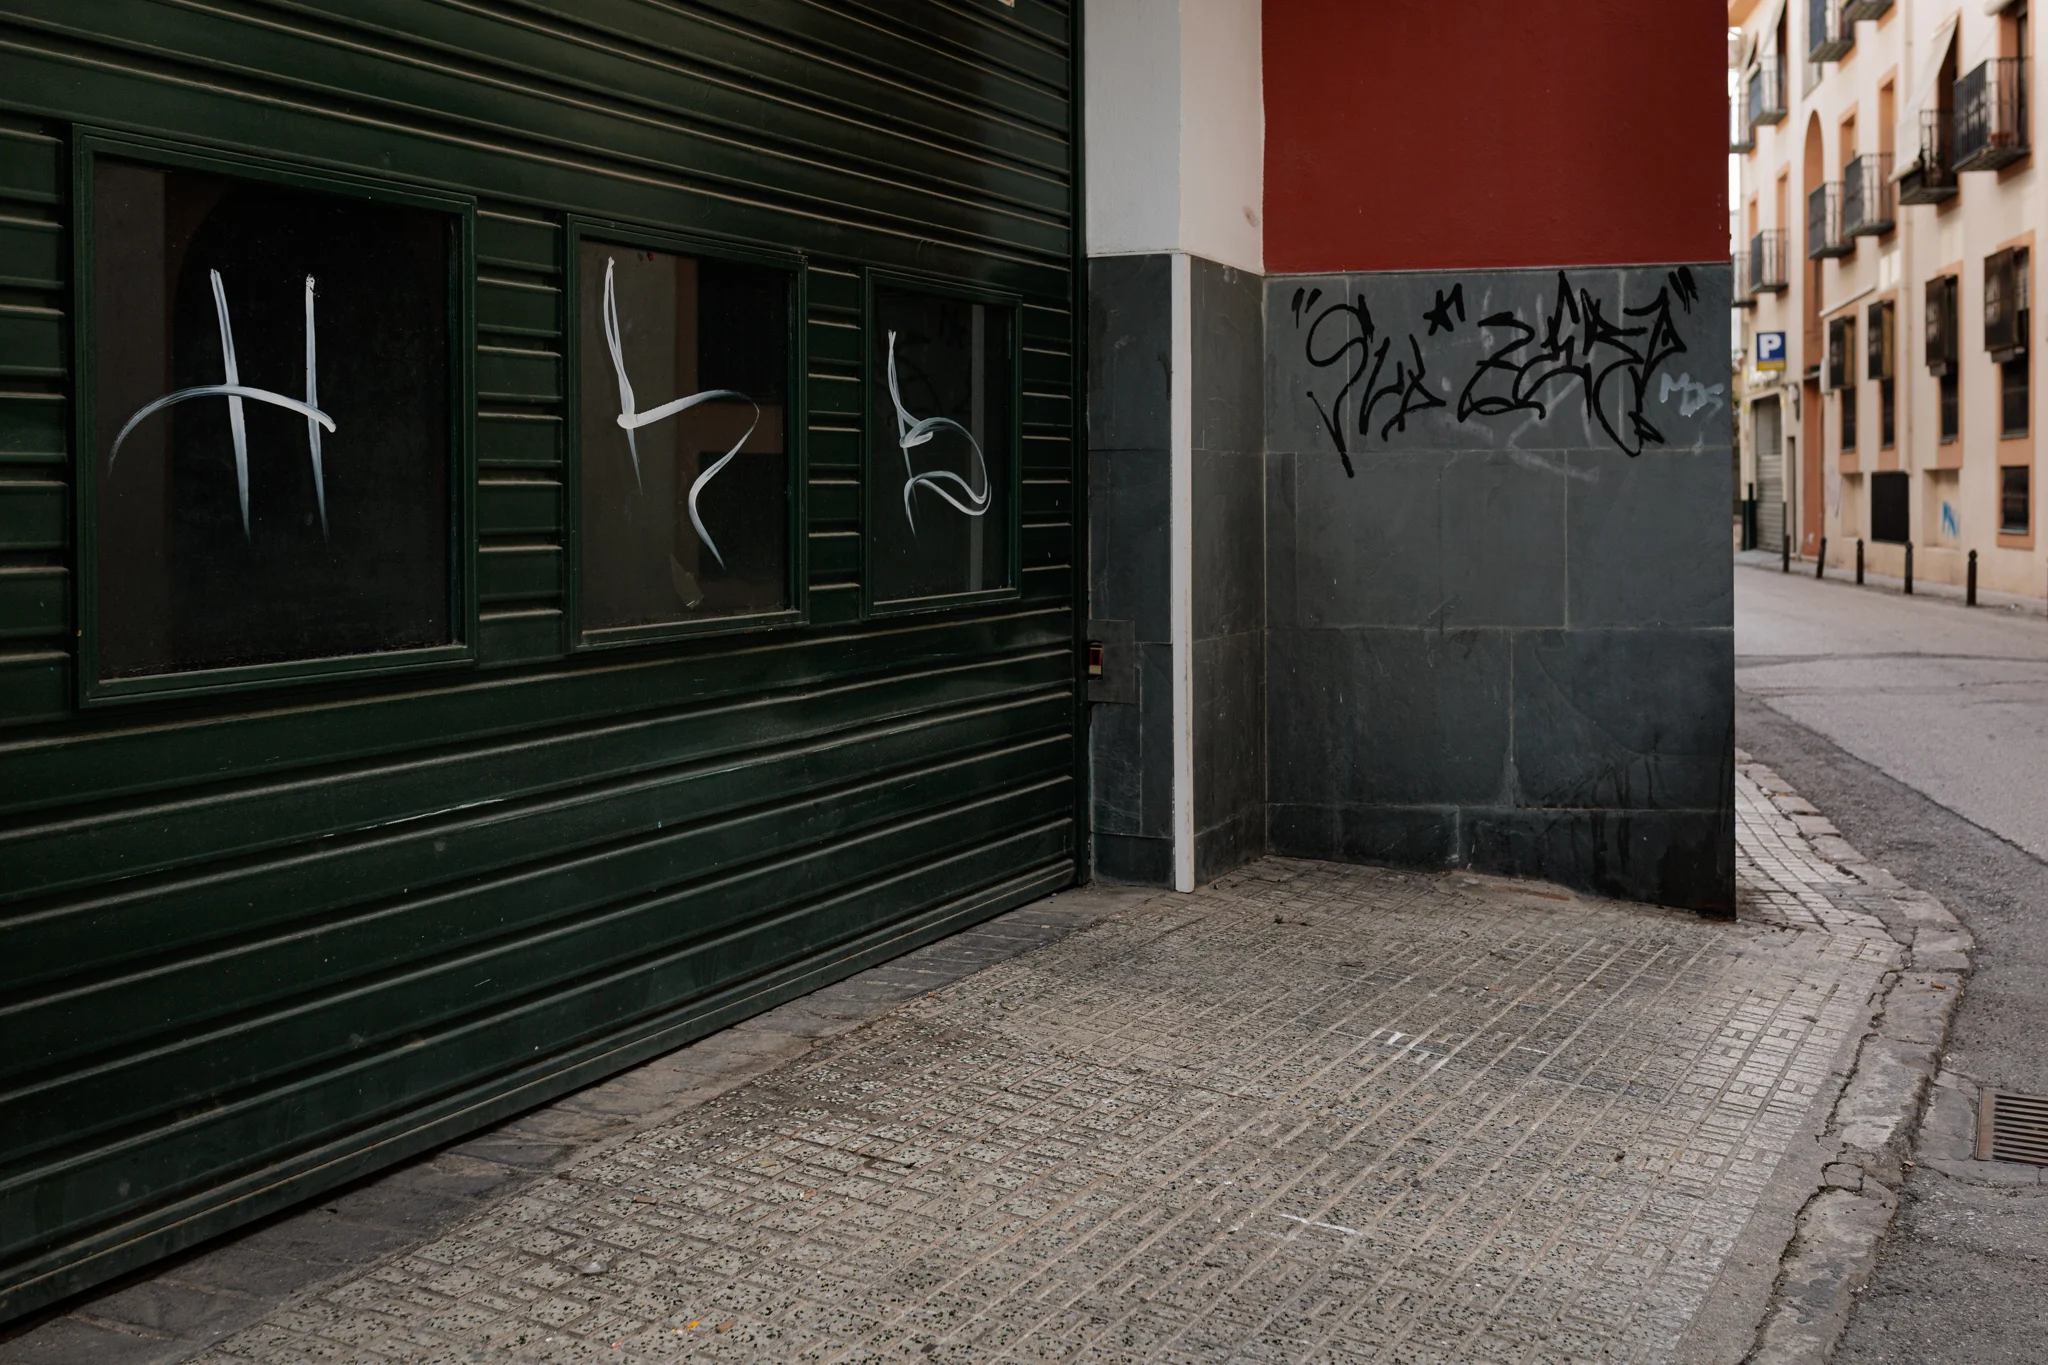 Antonio José Muro | 085/365 | ¿Arte urbano?